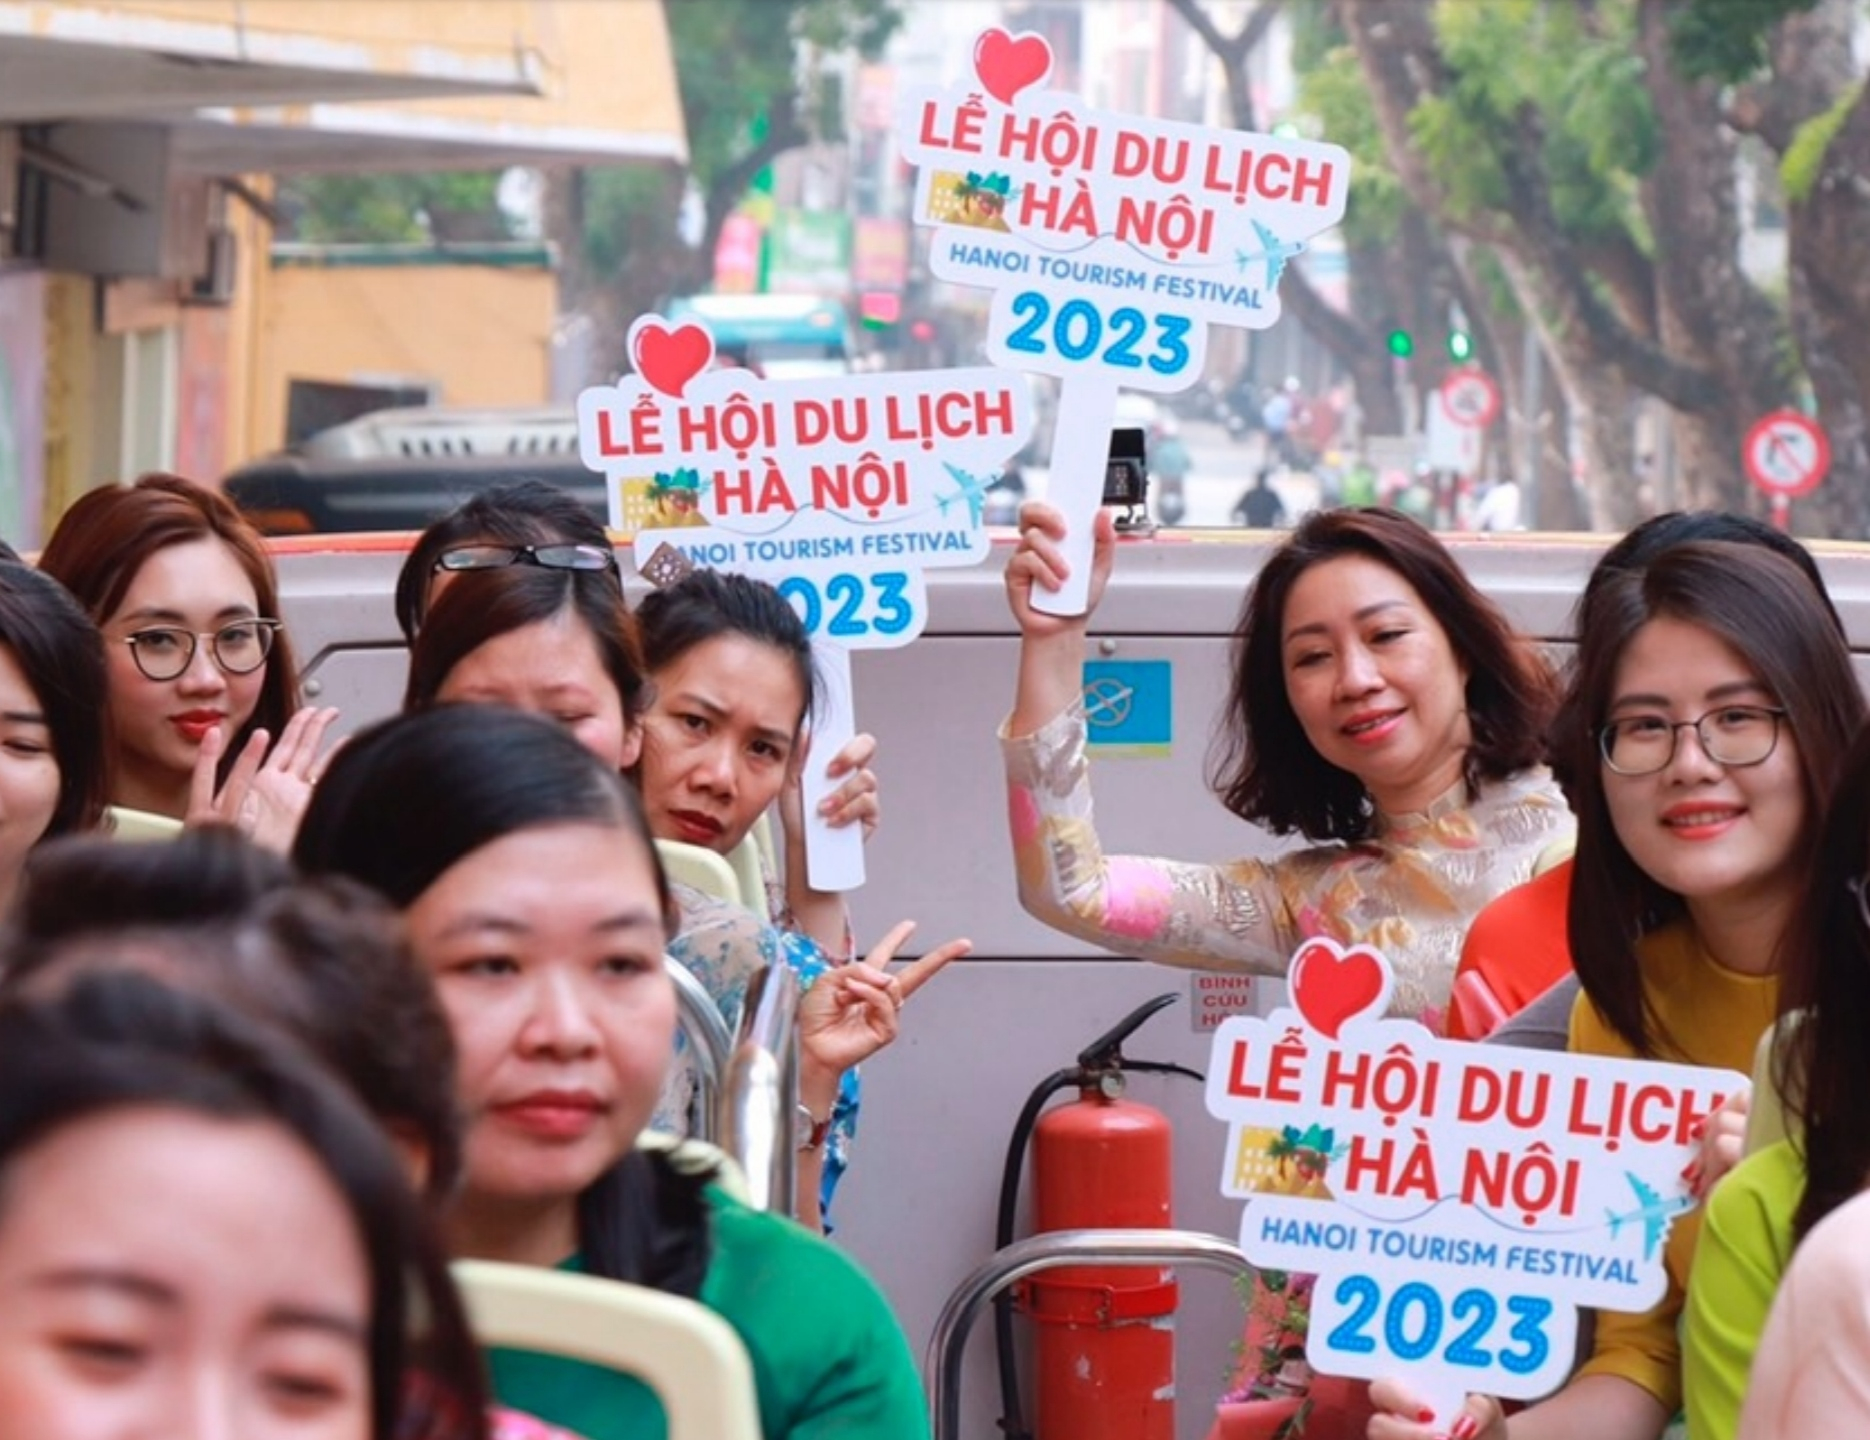 Lễ hội du lịch Hà Nội 2023 diễn ra trong bối cảnh khó khăn của ngành du lịch Việt Nam khi mở cửa sớm nhưng lại 'đi trước về sau', lượng khách quốc tế vẫn chưa thể phục hồi